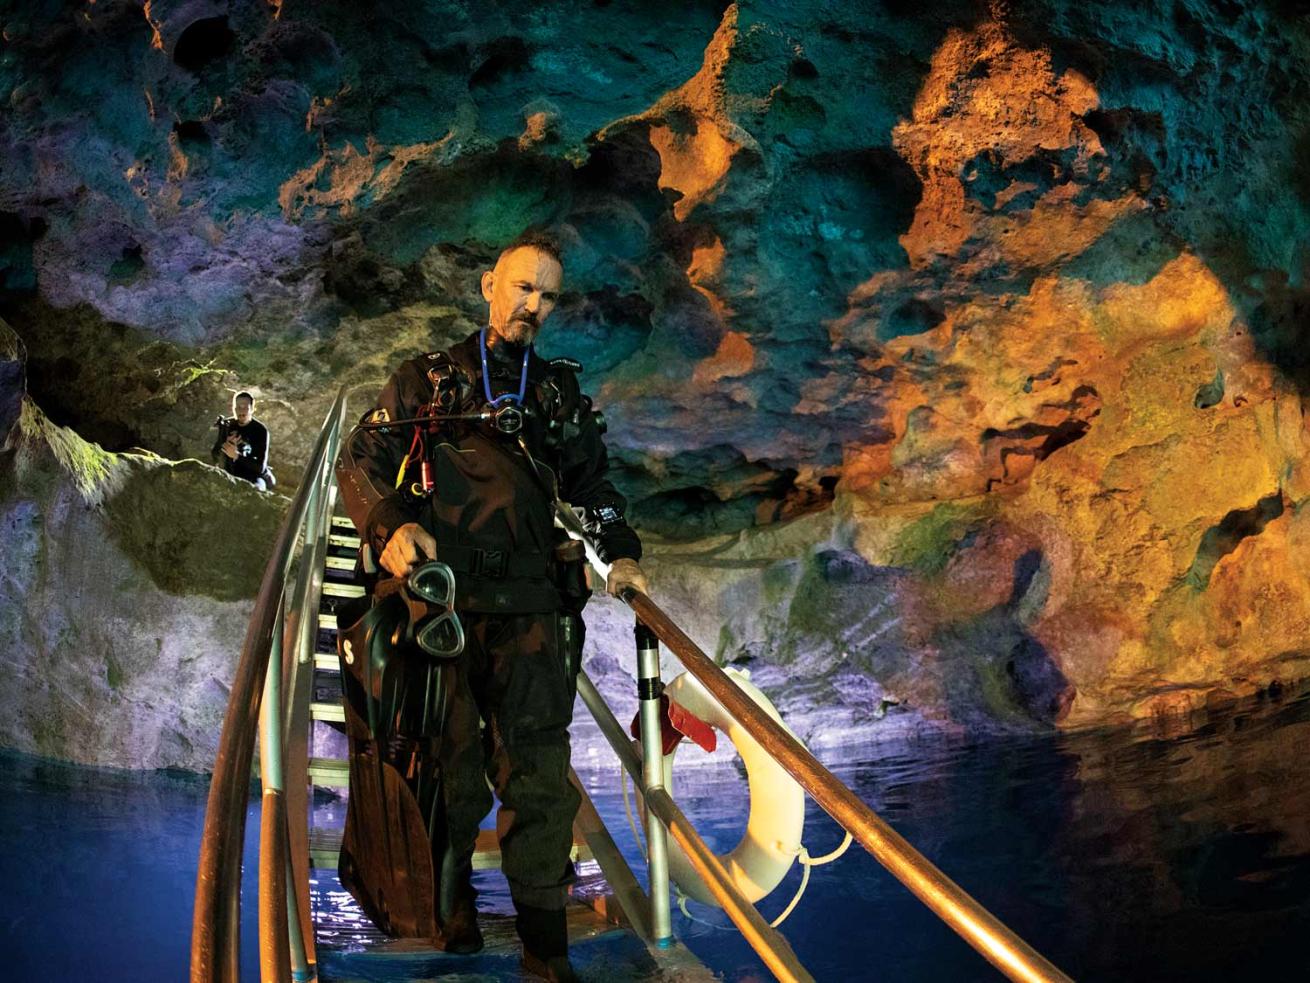 Scuba diver in a cave